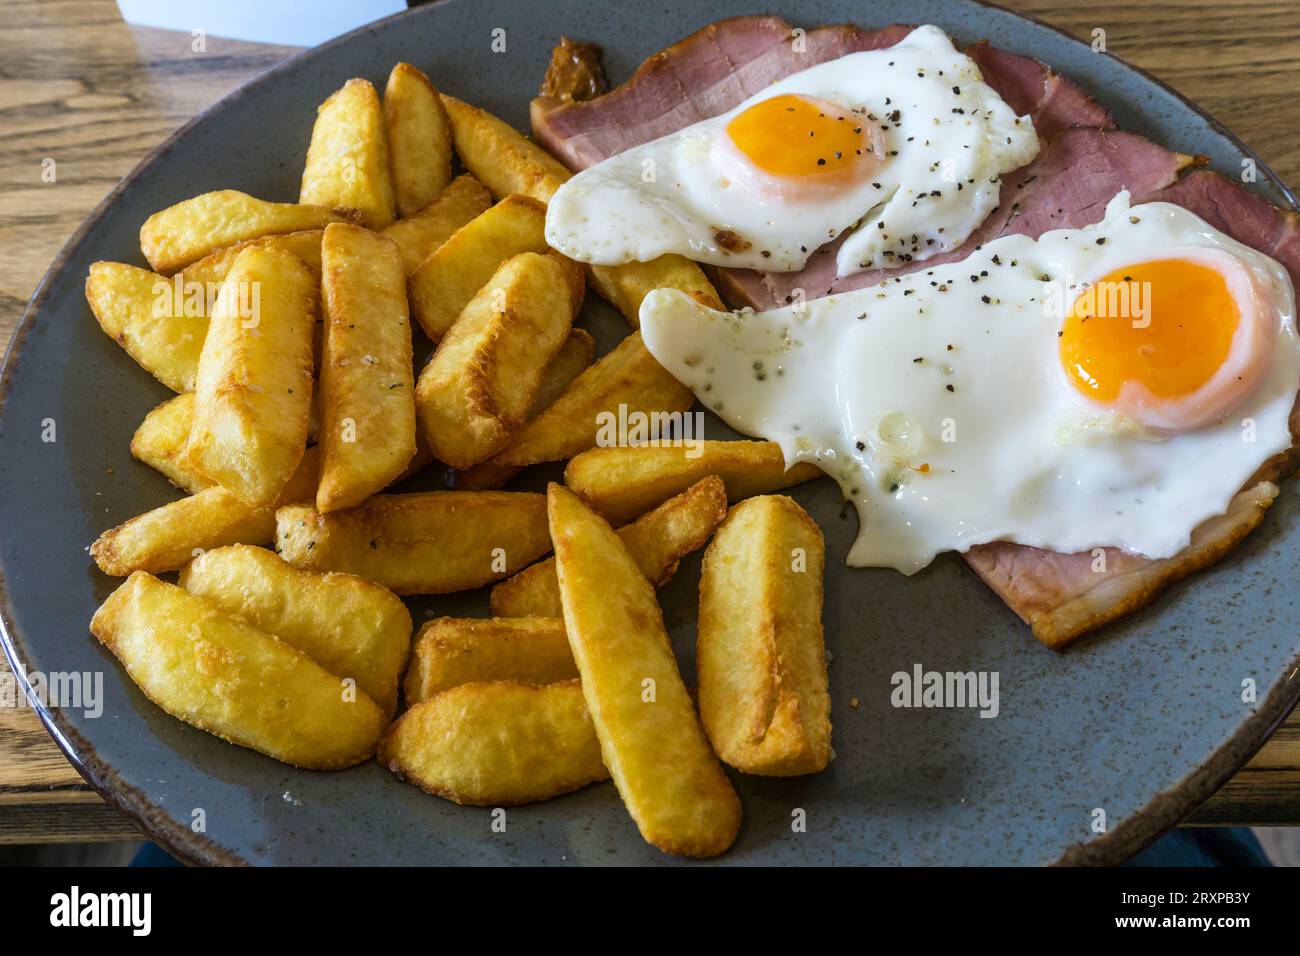 Un tipico pasto inglese da pub a base di prosciutto, uova e patatine fritte. Foto Stock